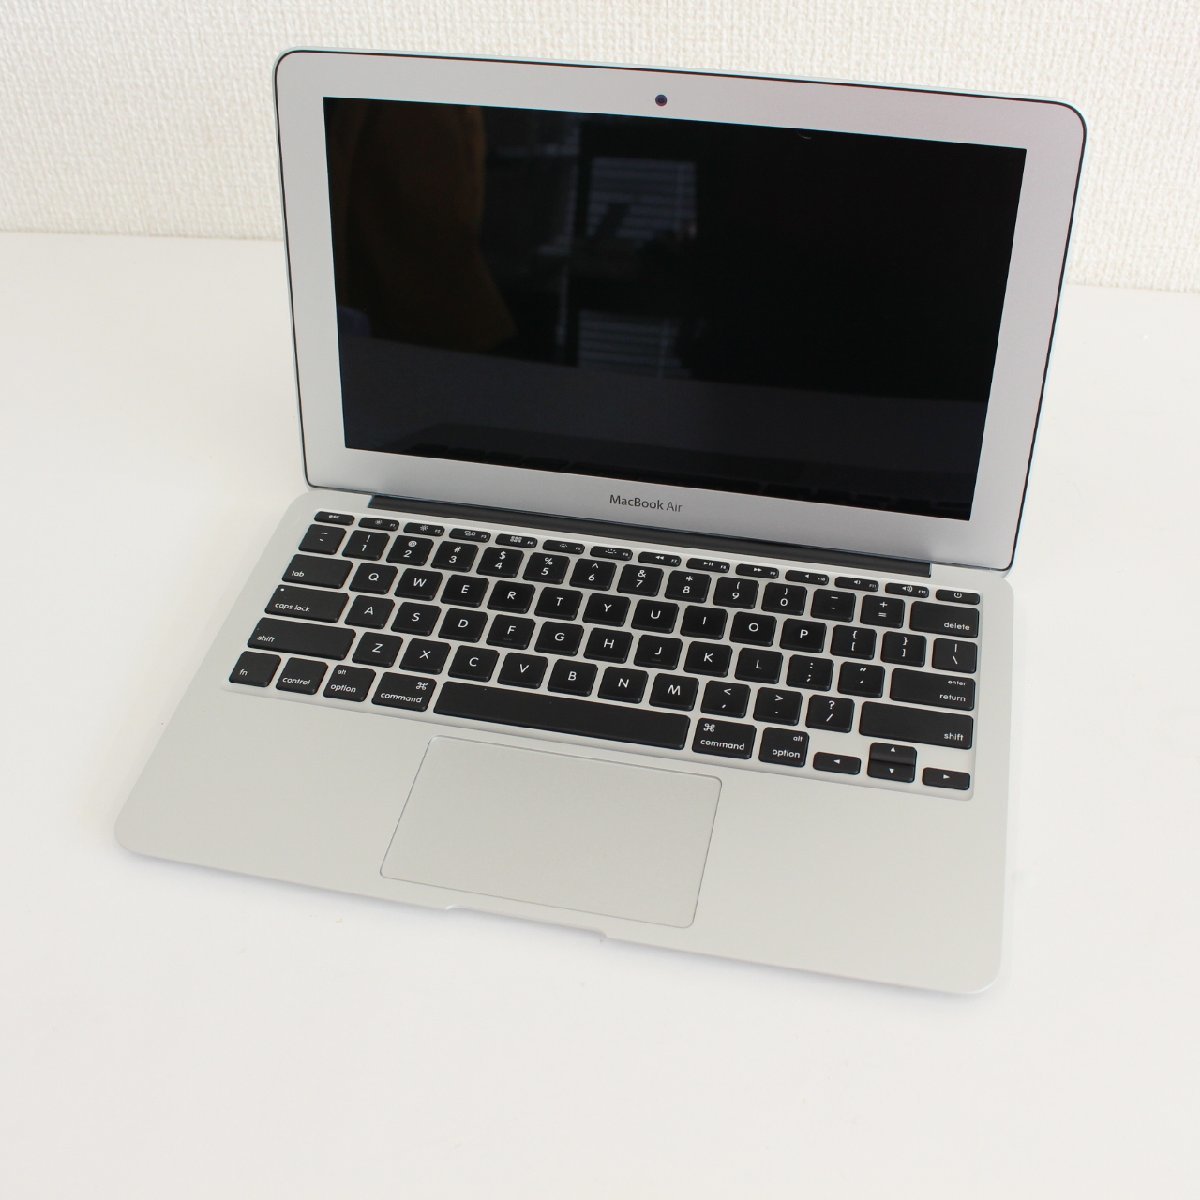 東京都練馬区にて アップル MacBook Air 5.1 A1465  を出張買取させて頂きました。